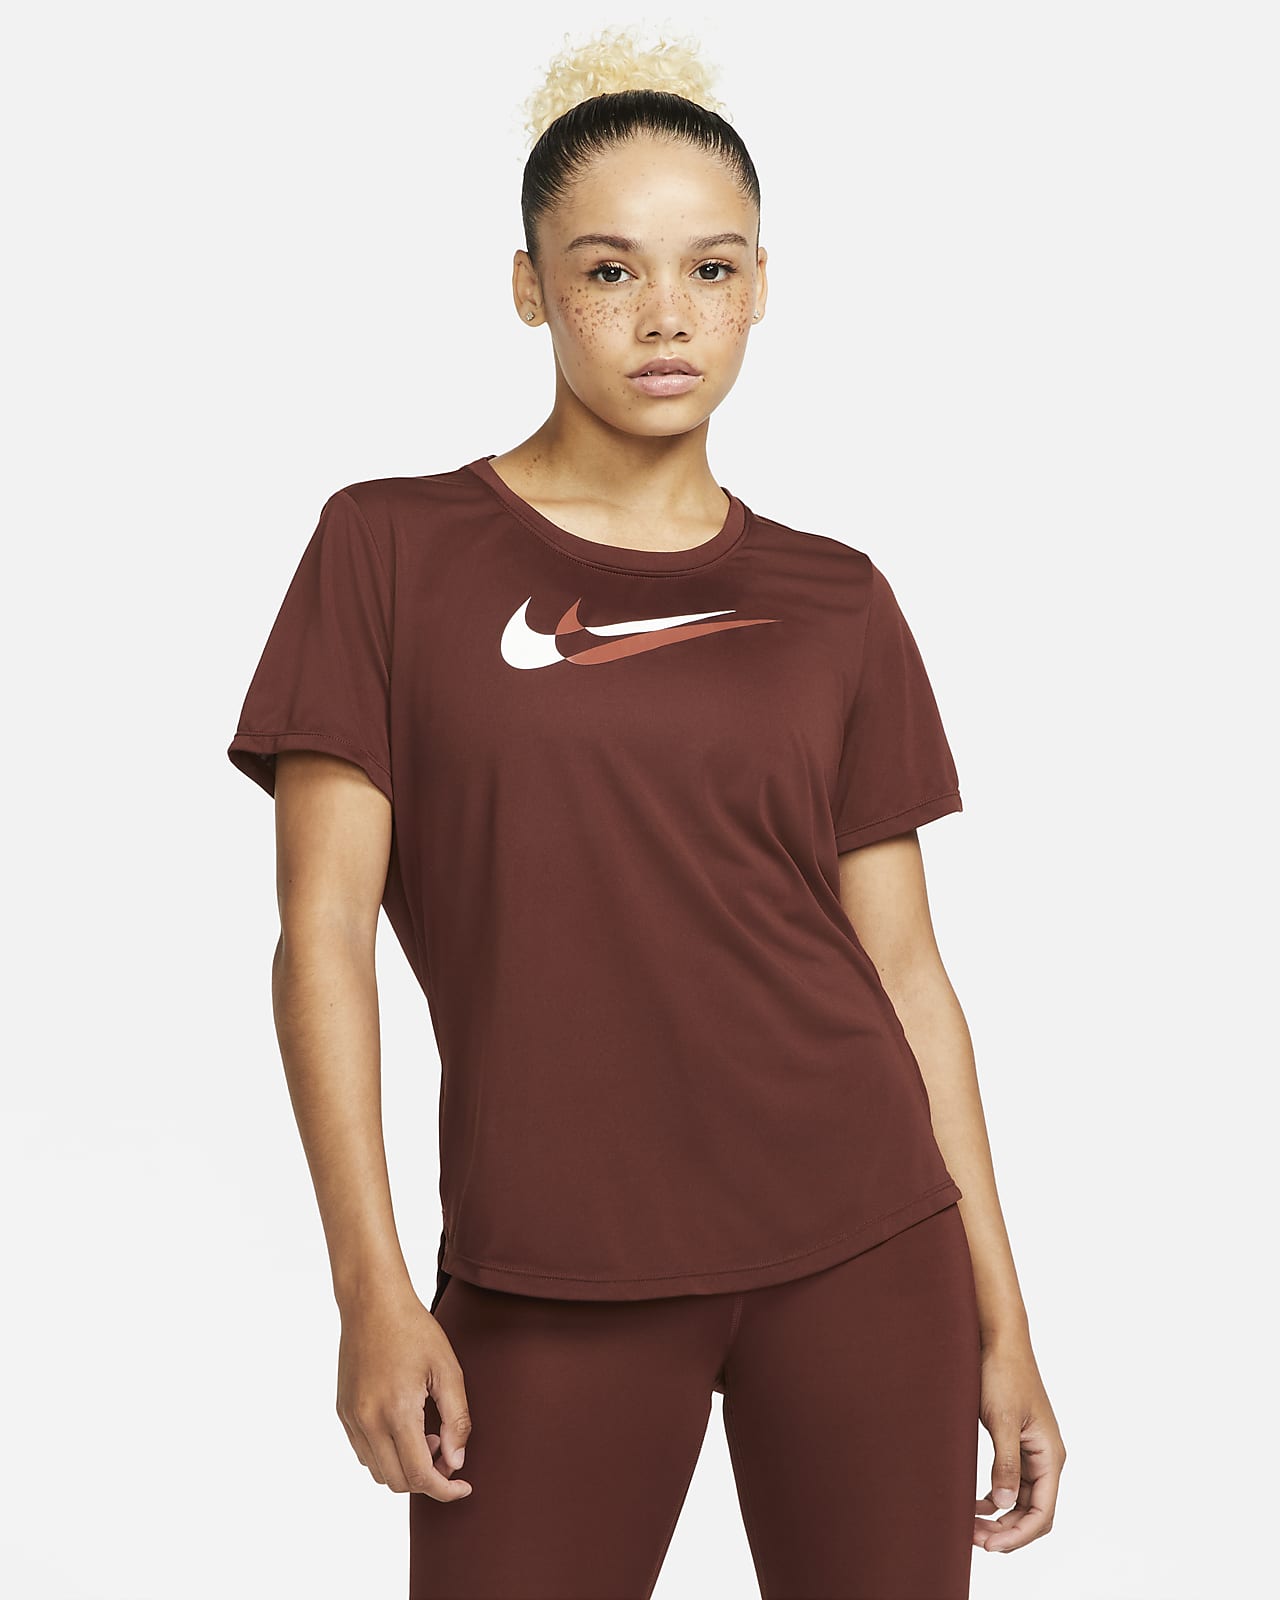 Nike Dri-FIT Swoosh Run rövid ujjú női futófelső